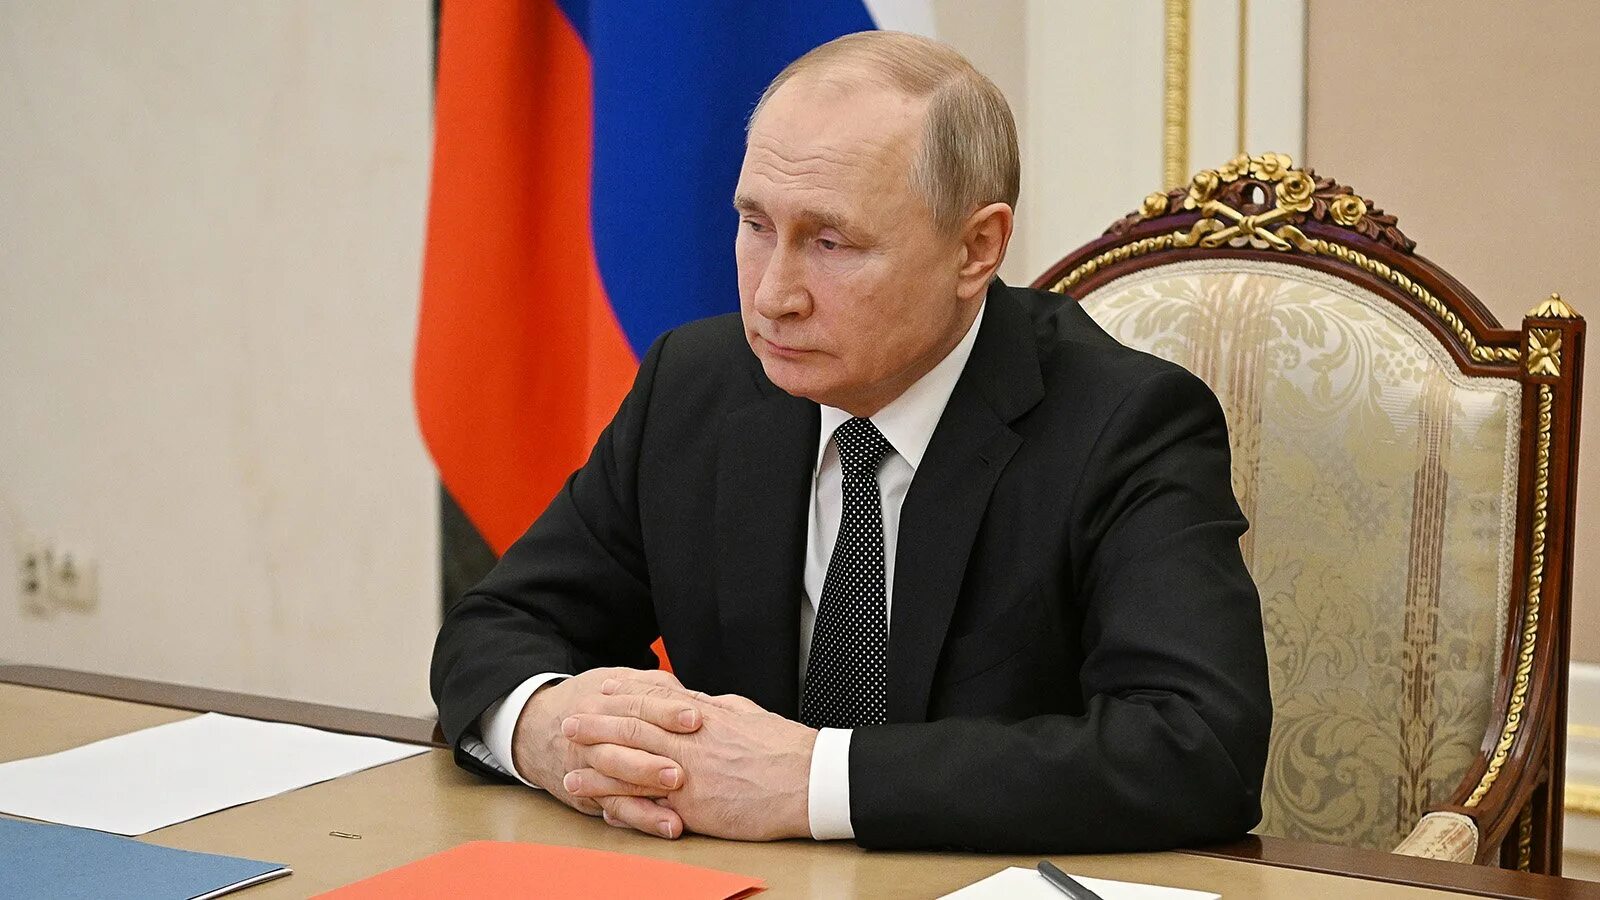 Обращение Путина 24 февраля 2022 Россия 24.